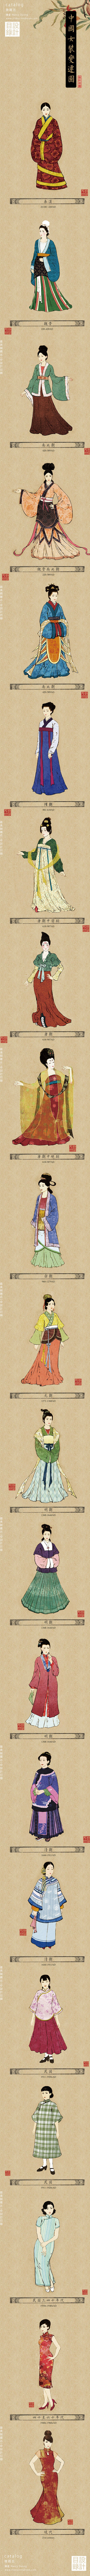 一起来看看中国女装的变迁史吧！